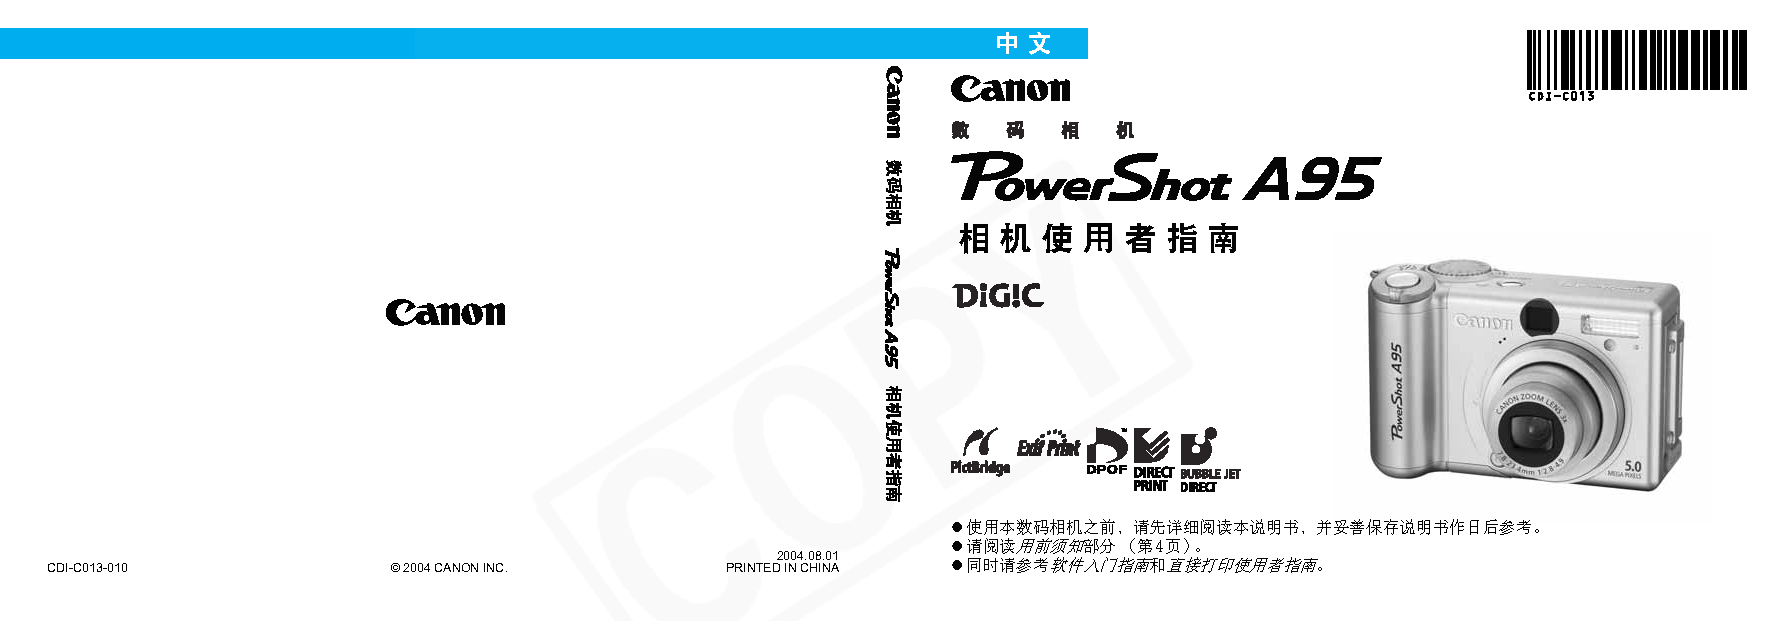 佳能 Canon PowerShot A95 用户指南 封面